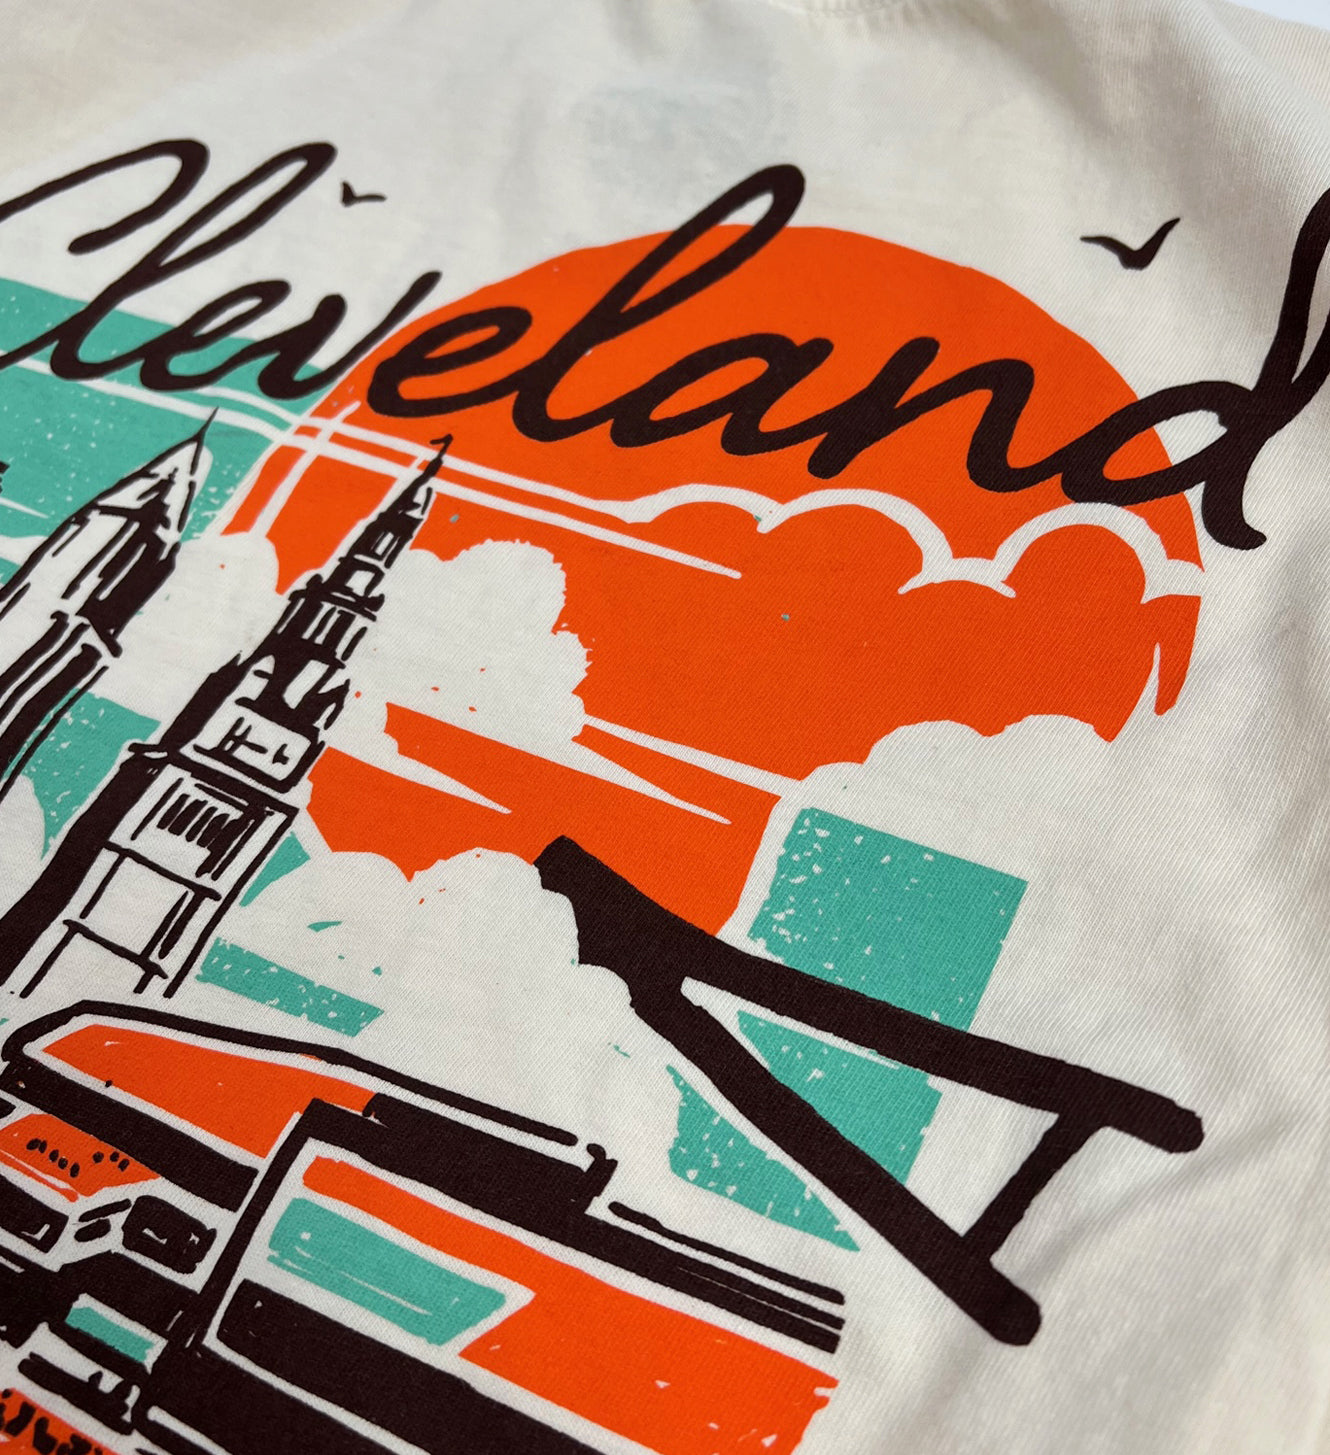 Cleveland Football Summer T Shirt